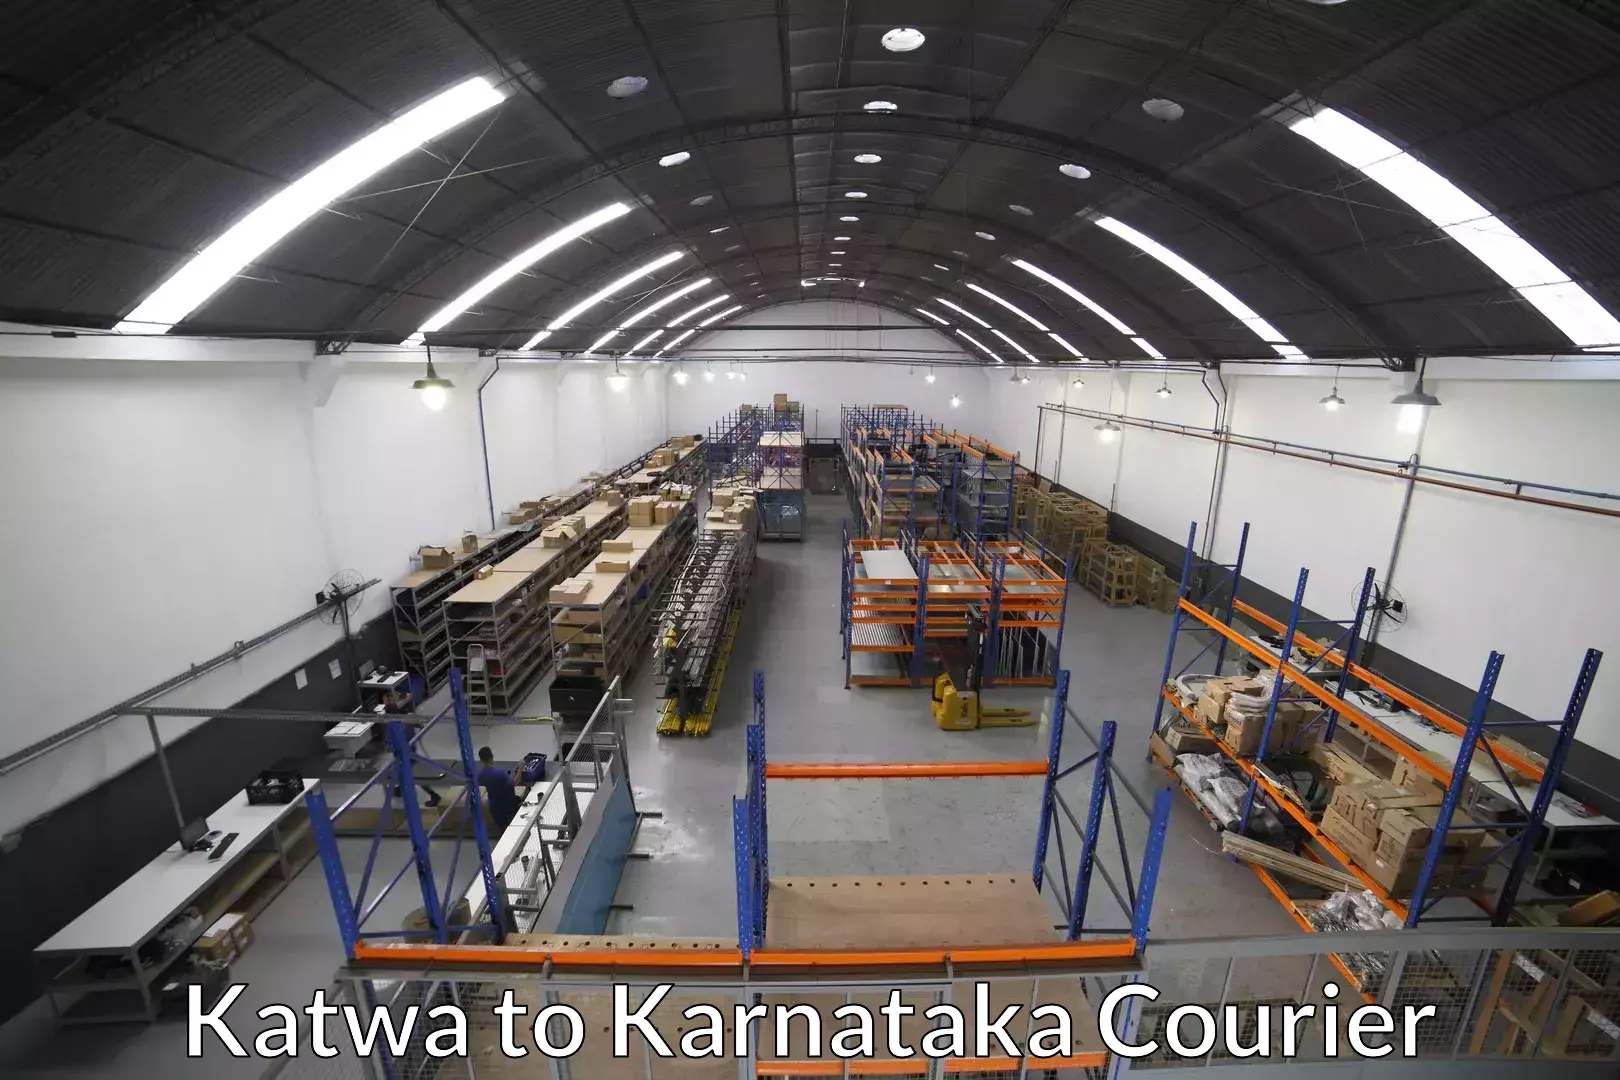 Furniture transport service Katwa to Laxmeshwar